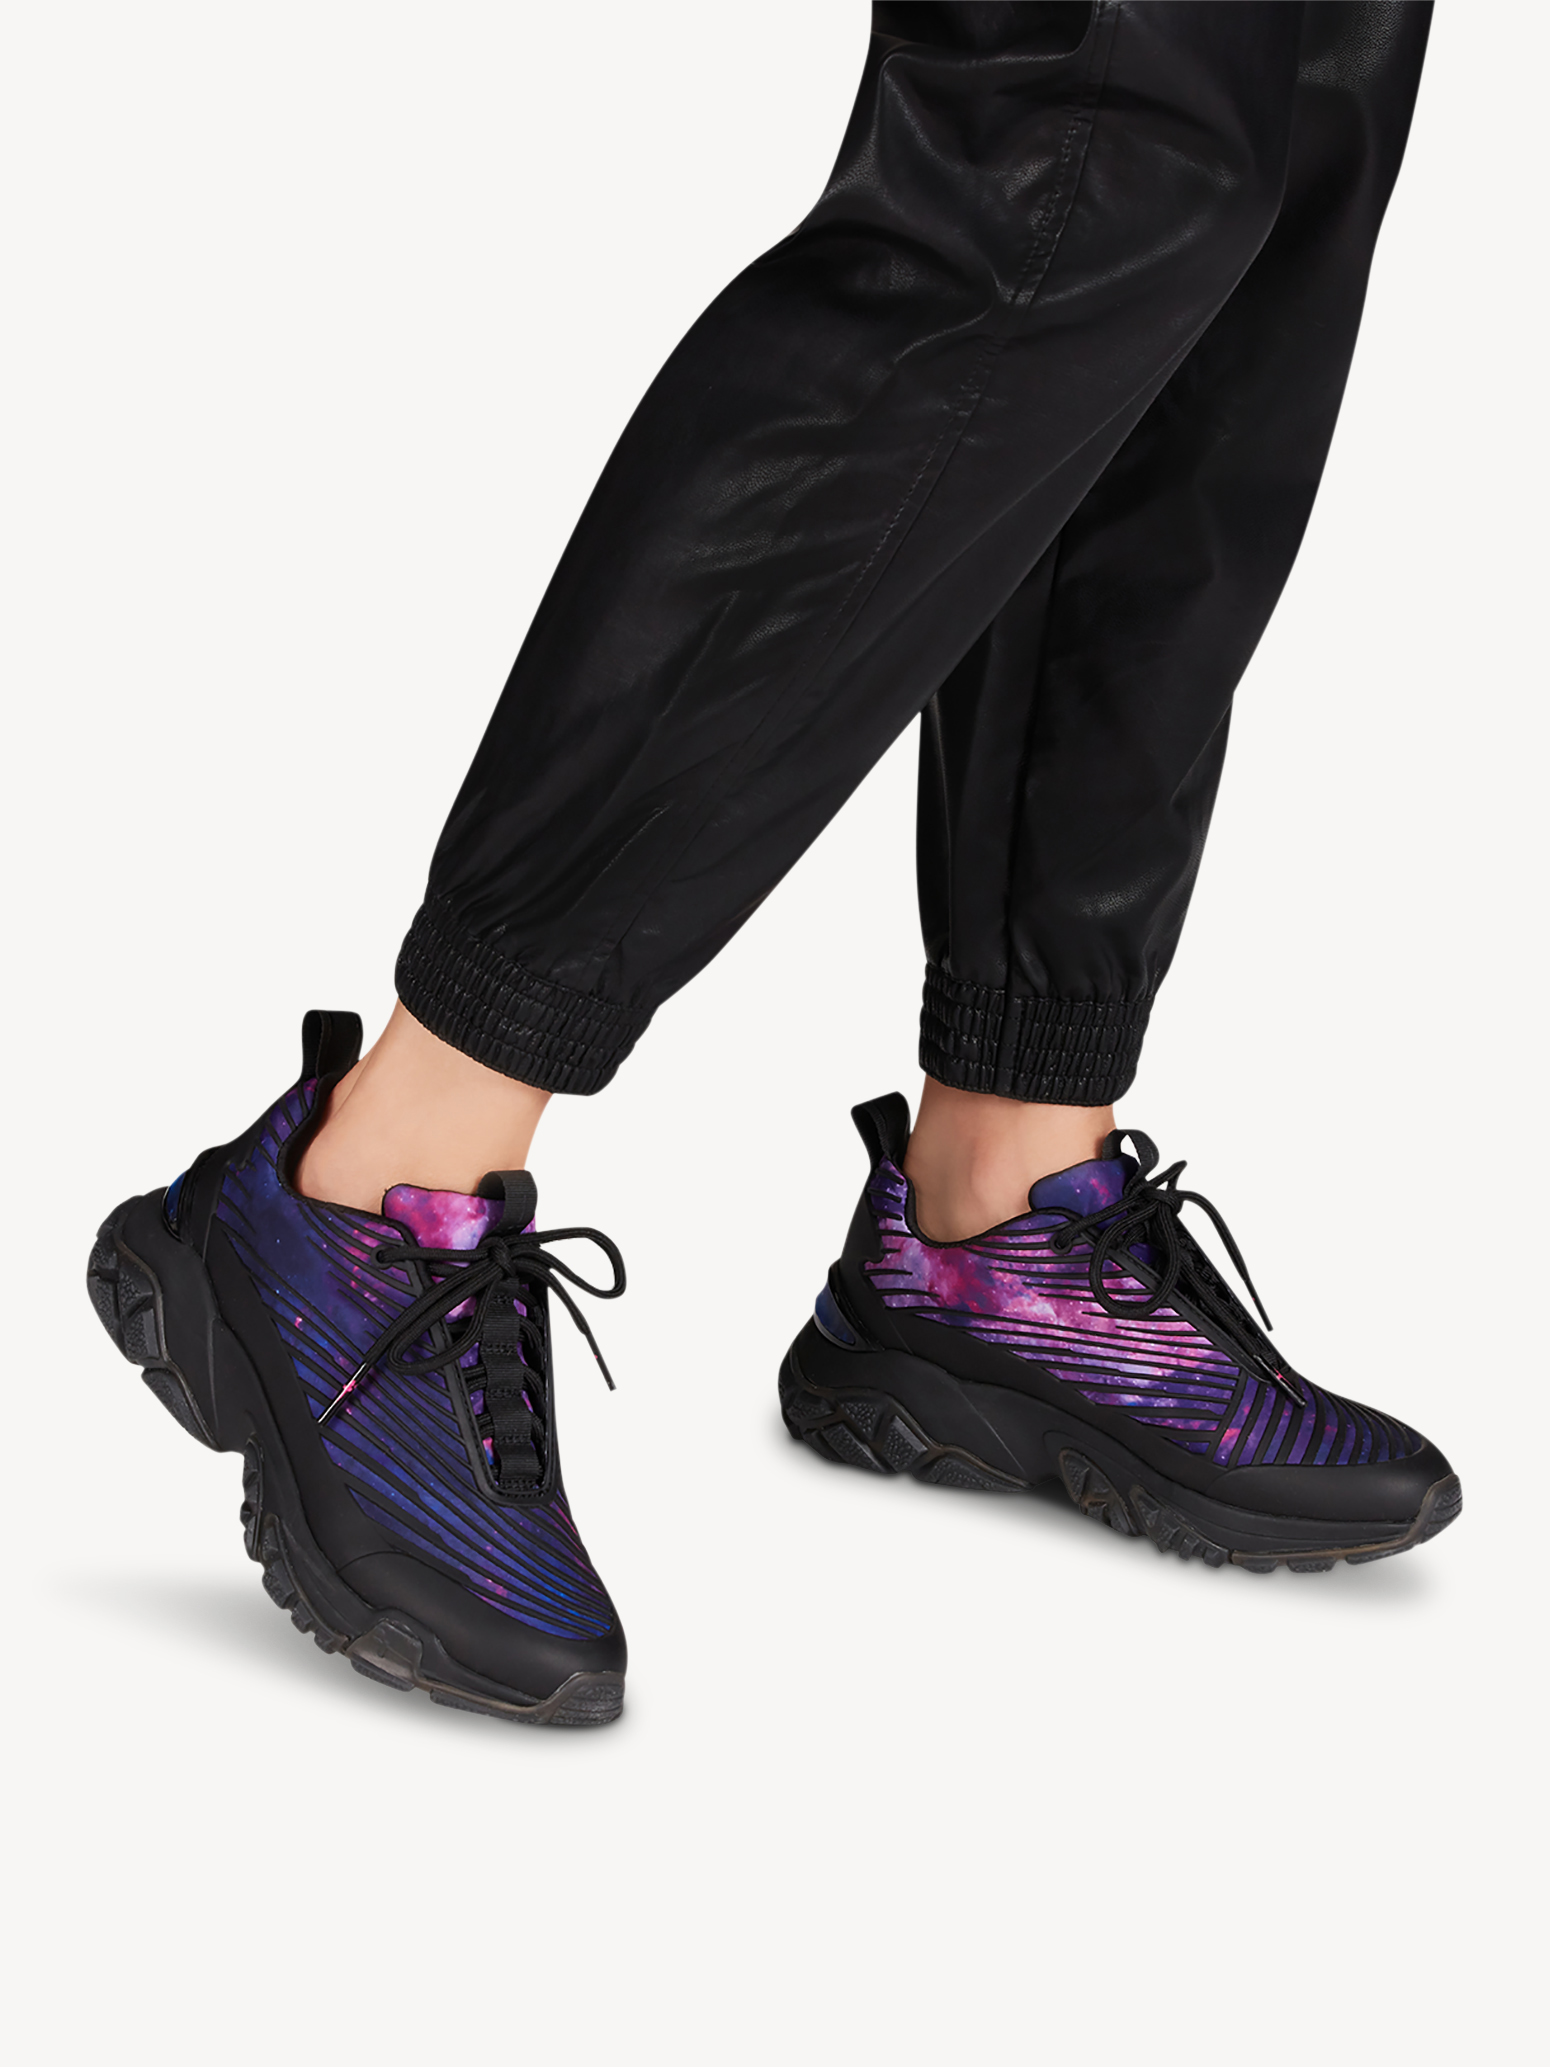 Ботинки на шнурках женские 5 AW20 (черный комб.) - изображение №1